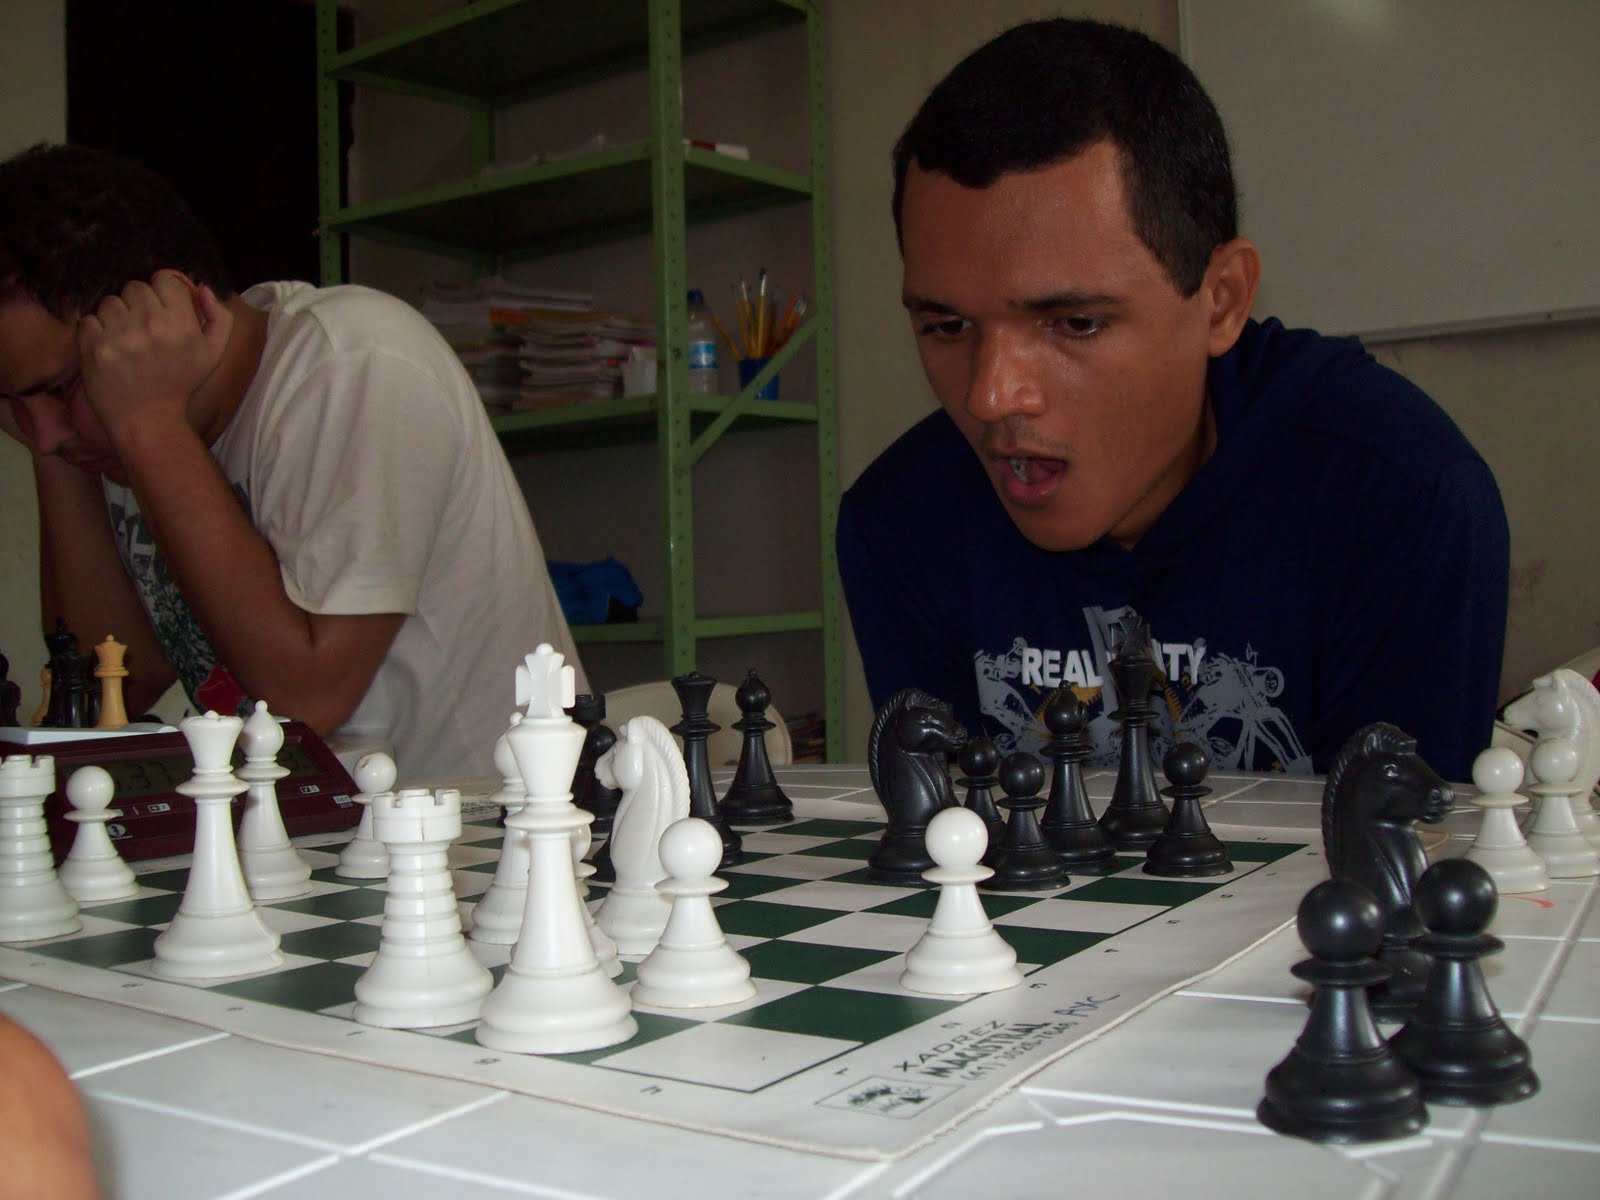 Evento - Campeonato Caruaruense de Xadrez - Caruaru Shopping